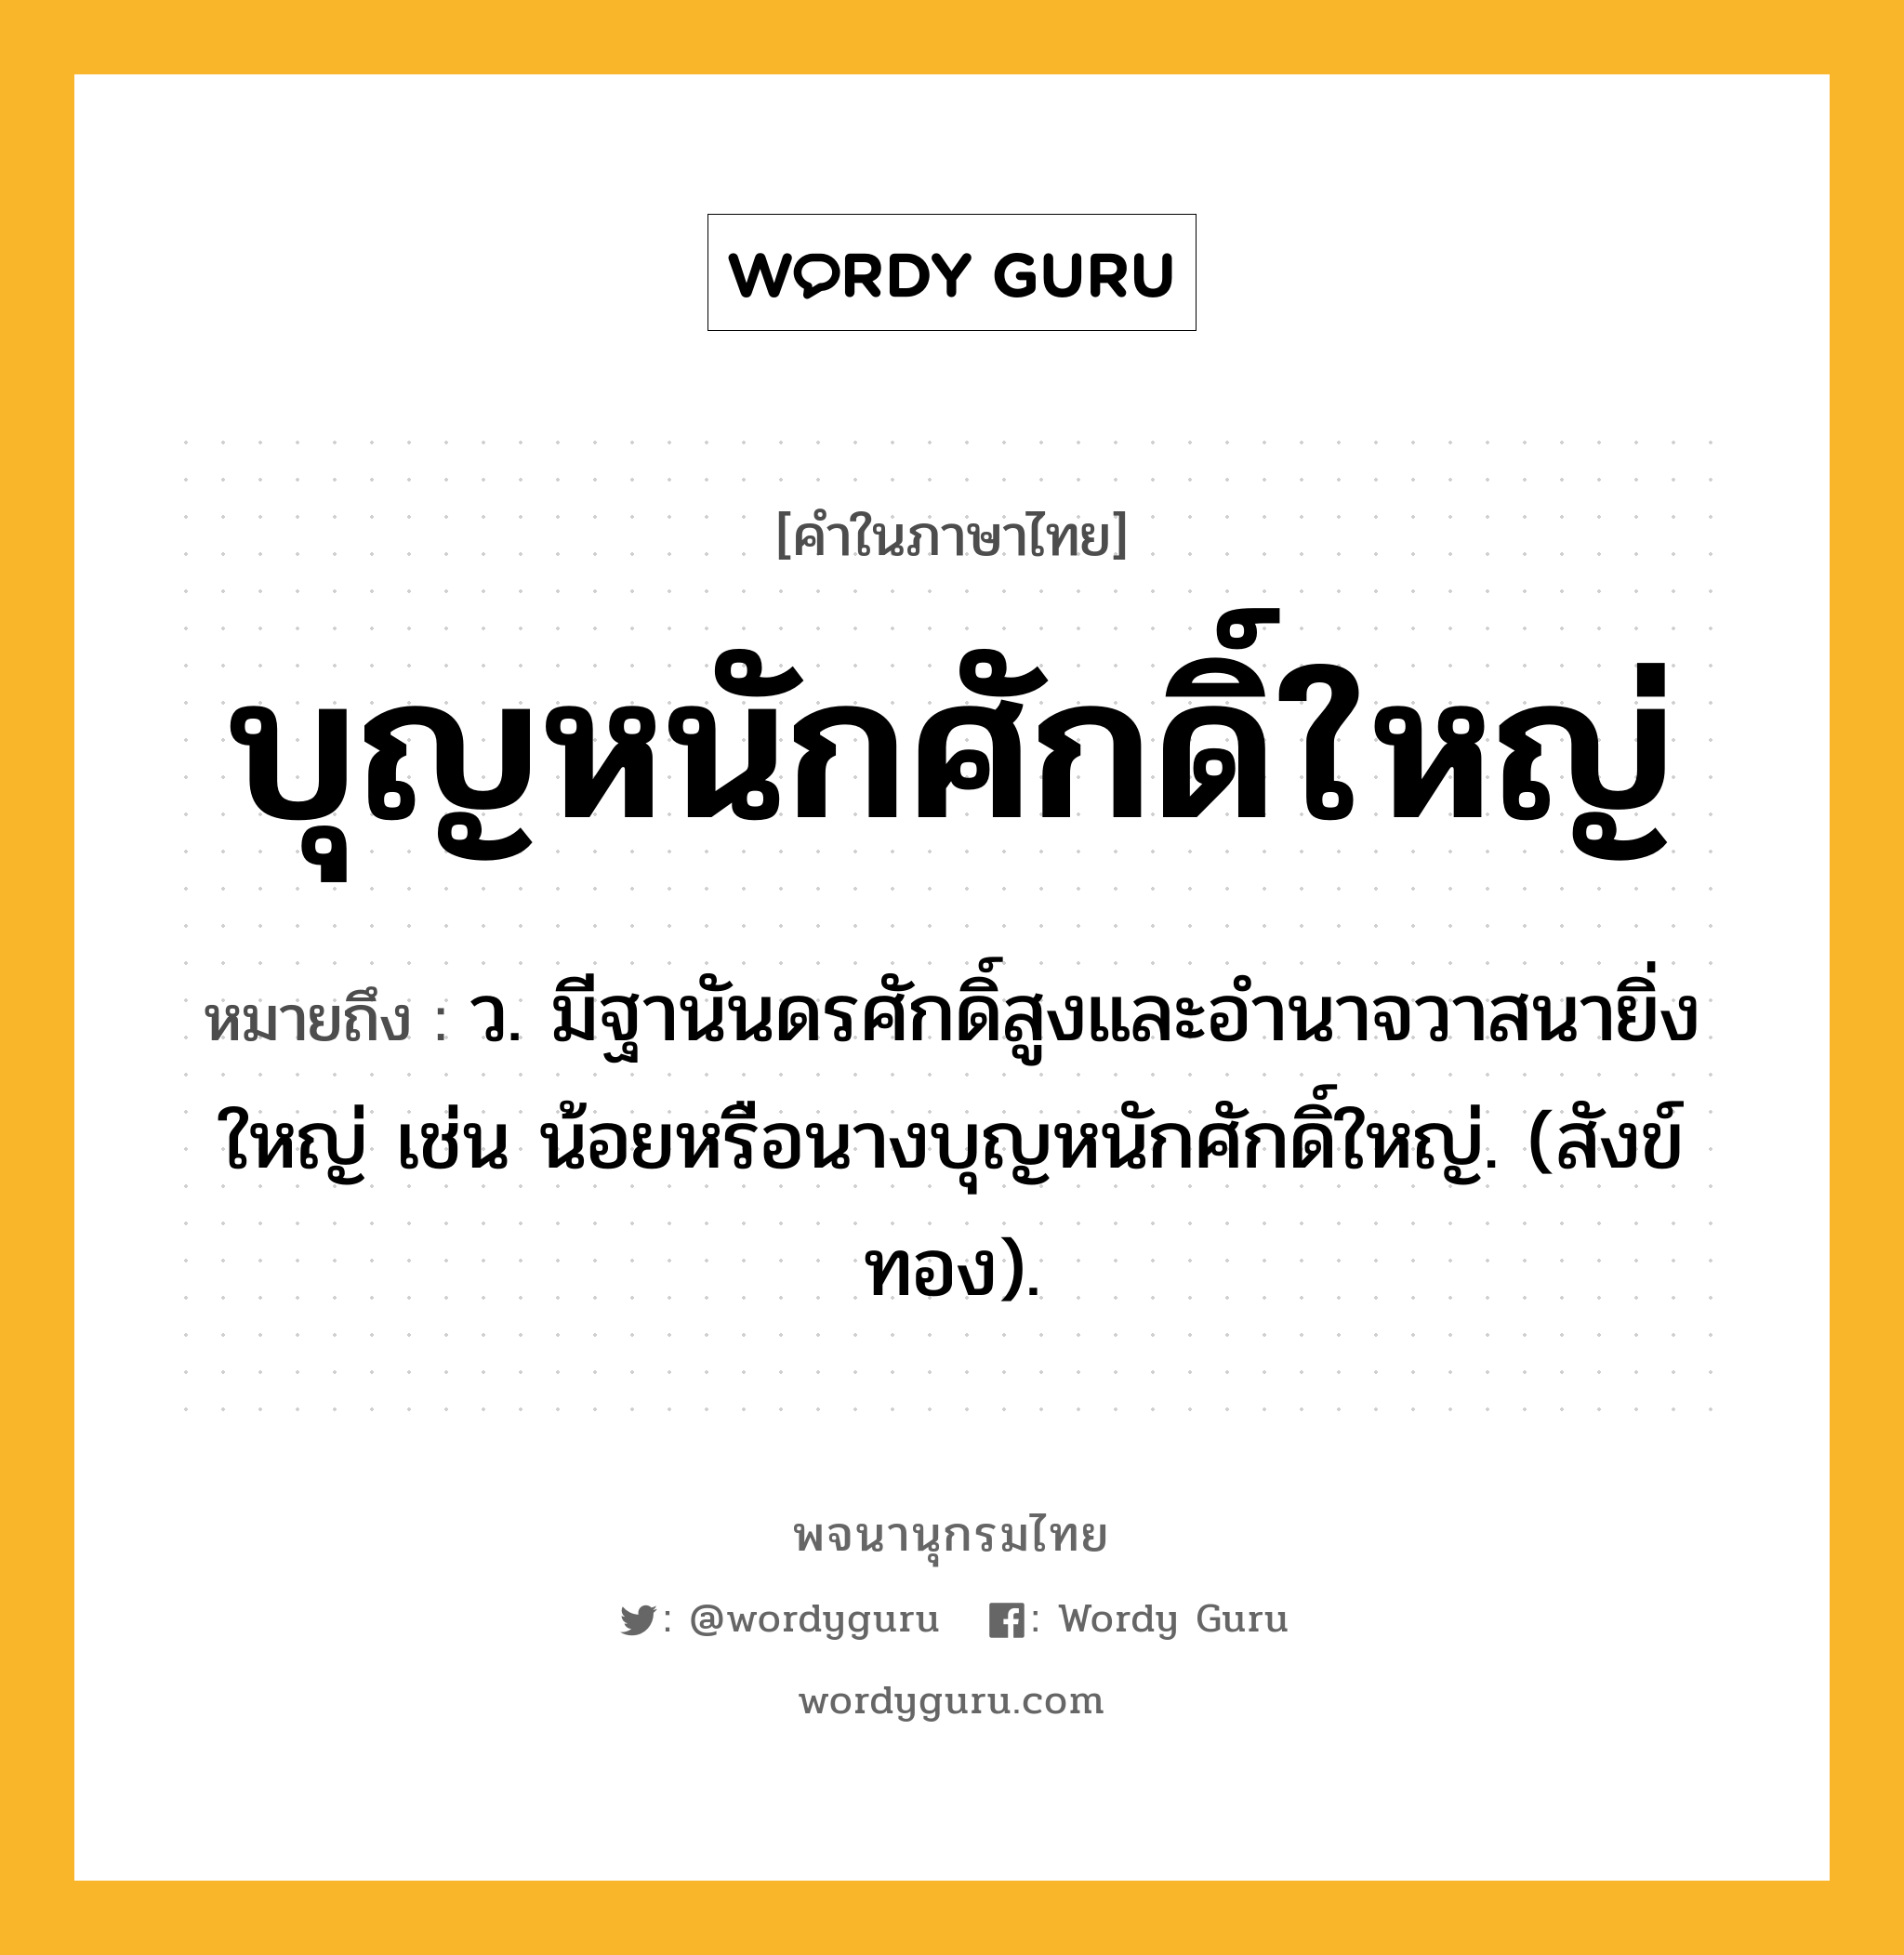 บุญหนักศักดิ์ใหญ่ หมายถึงอะไร?, คำในภาษาไทย บุญหนักศักดิ์ใหญ่ หมายถึง ว. มีฐานันดรศักดิ์สูงและอํานาจวาสนายิ่งใหญ่ เช่น น้อยหรือนางบุญหนักศักดิ์ใหญ่. (สังข์ทอง).